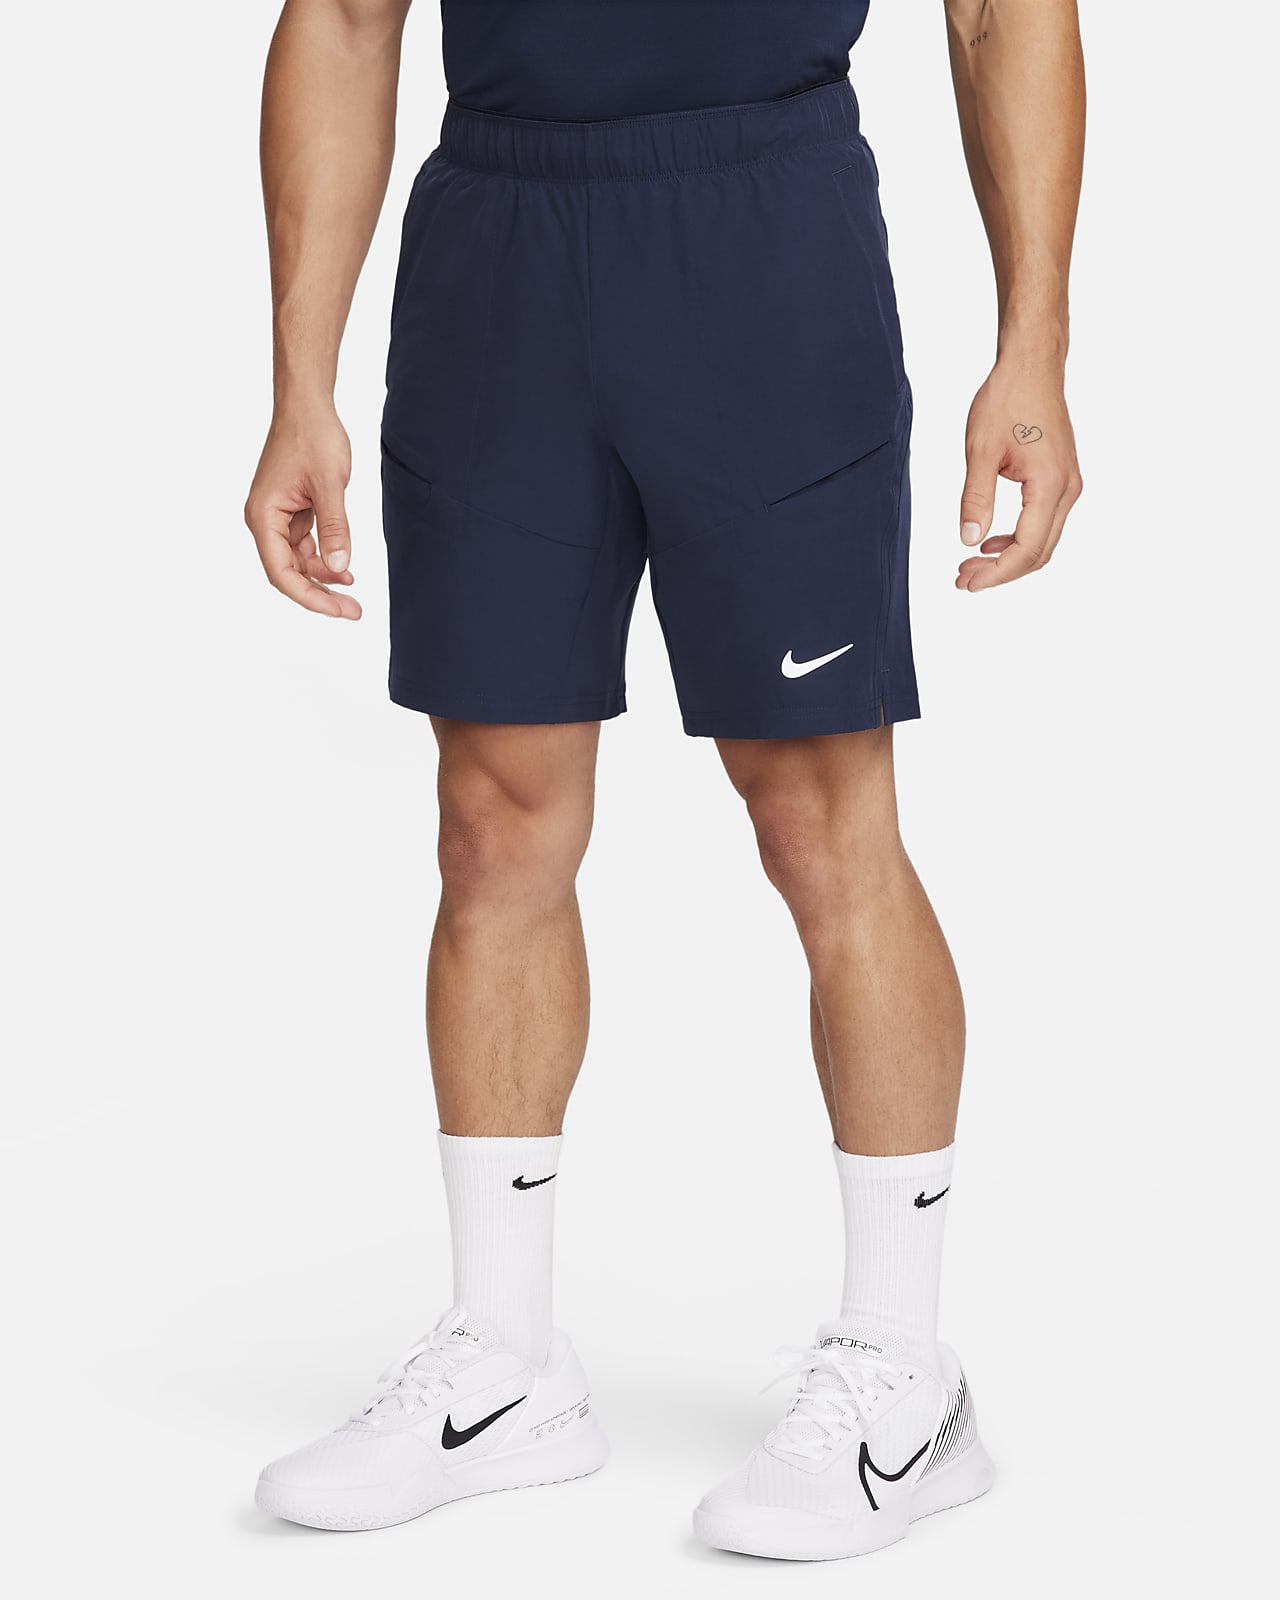 NikeCourt Advantage 23 cm-es férfi teniszrövidnadrág